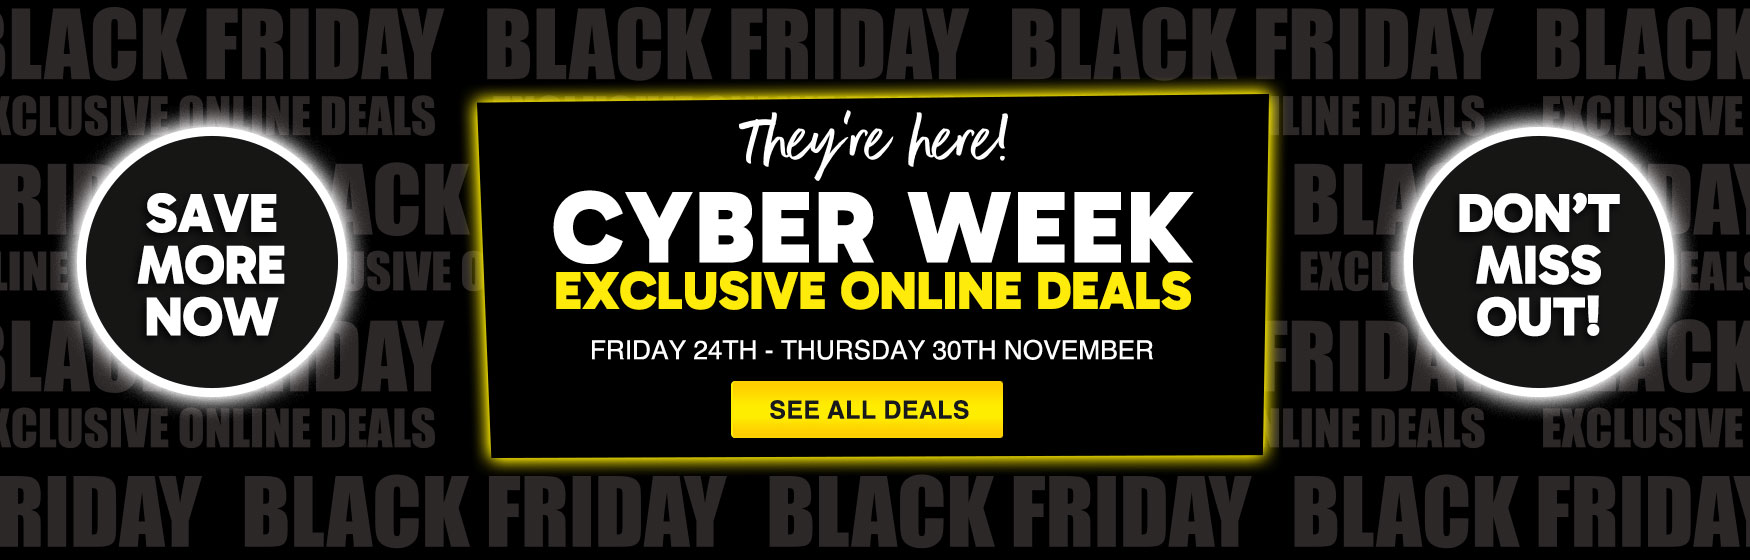 Cyber Week exclusive online deals